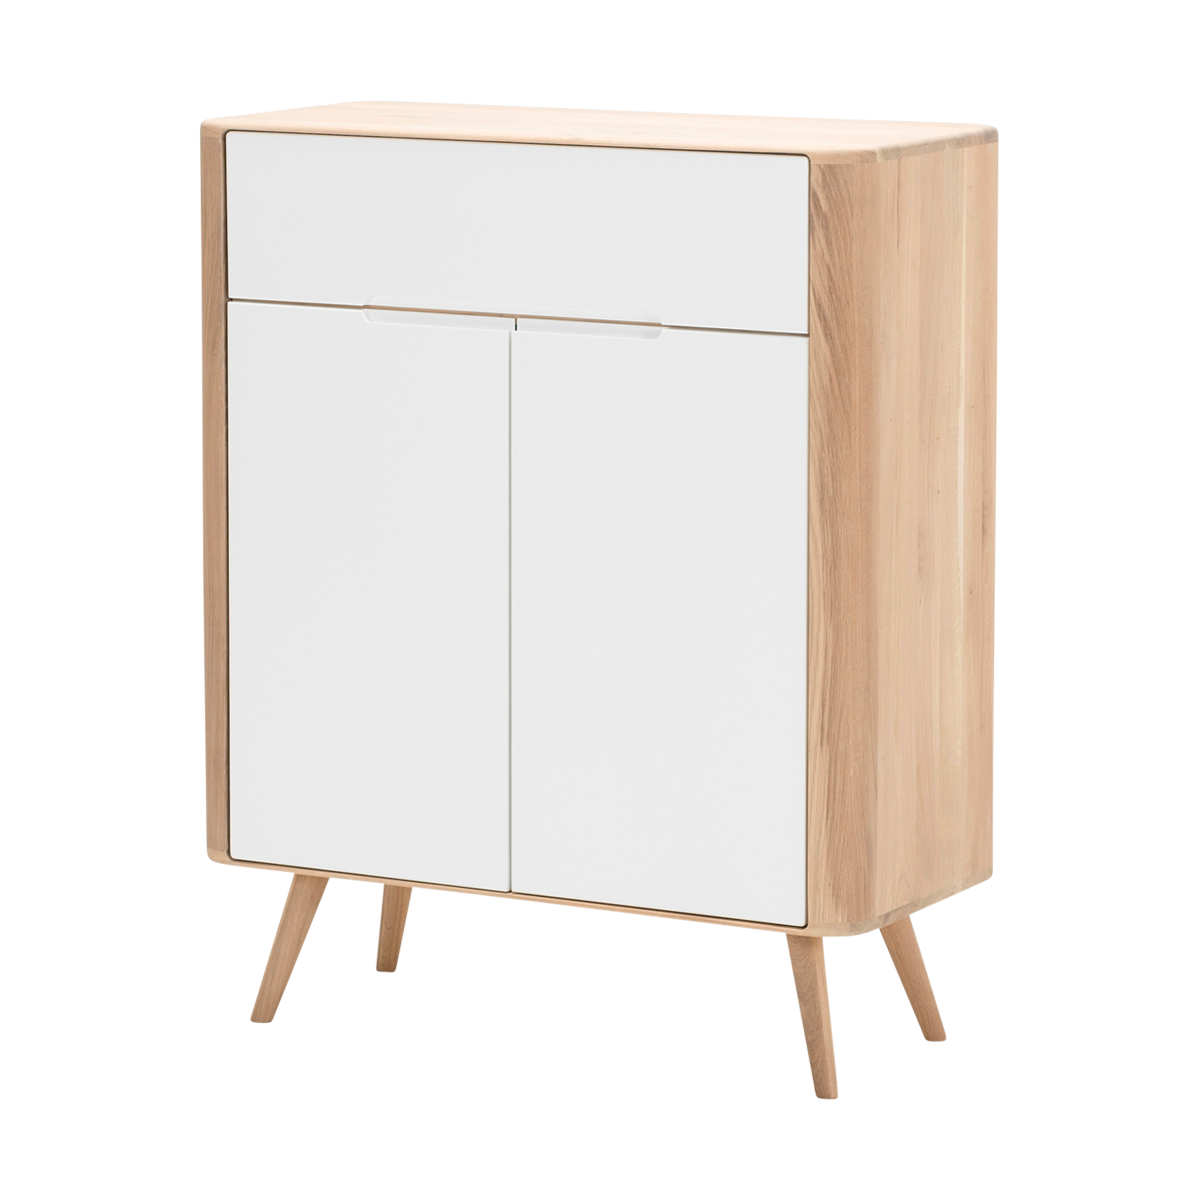 Ena dresser 90 houten ladekast whitewash - 90 x 110 cm